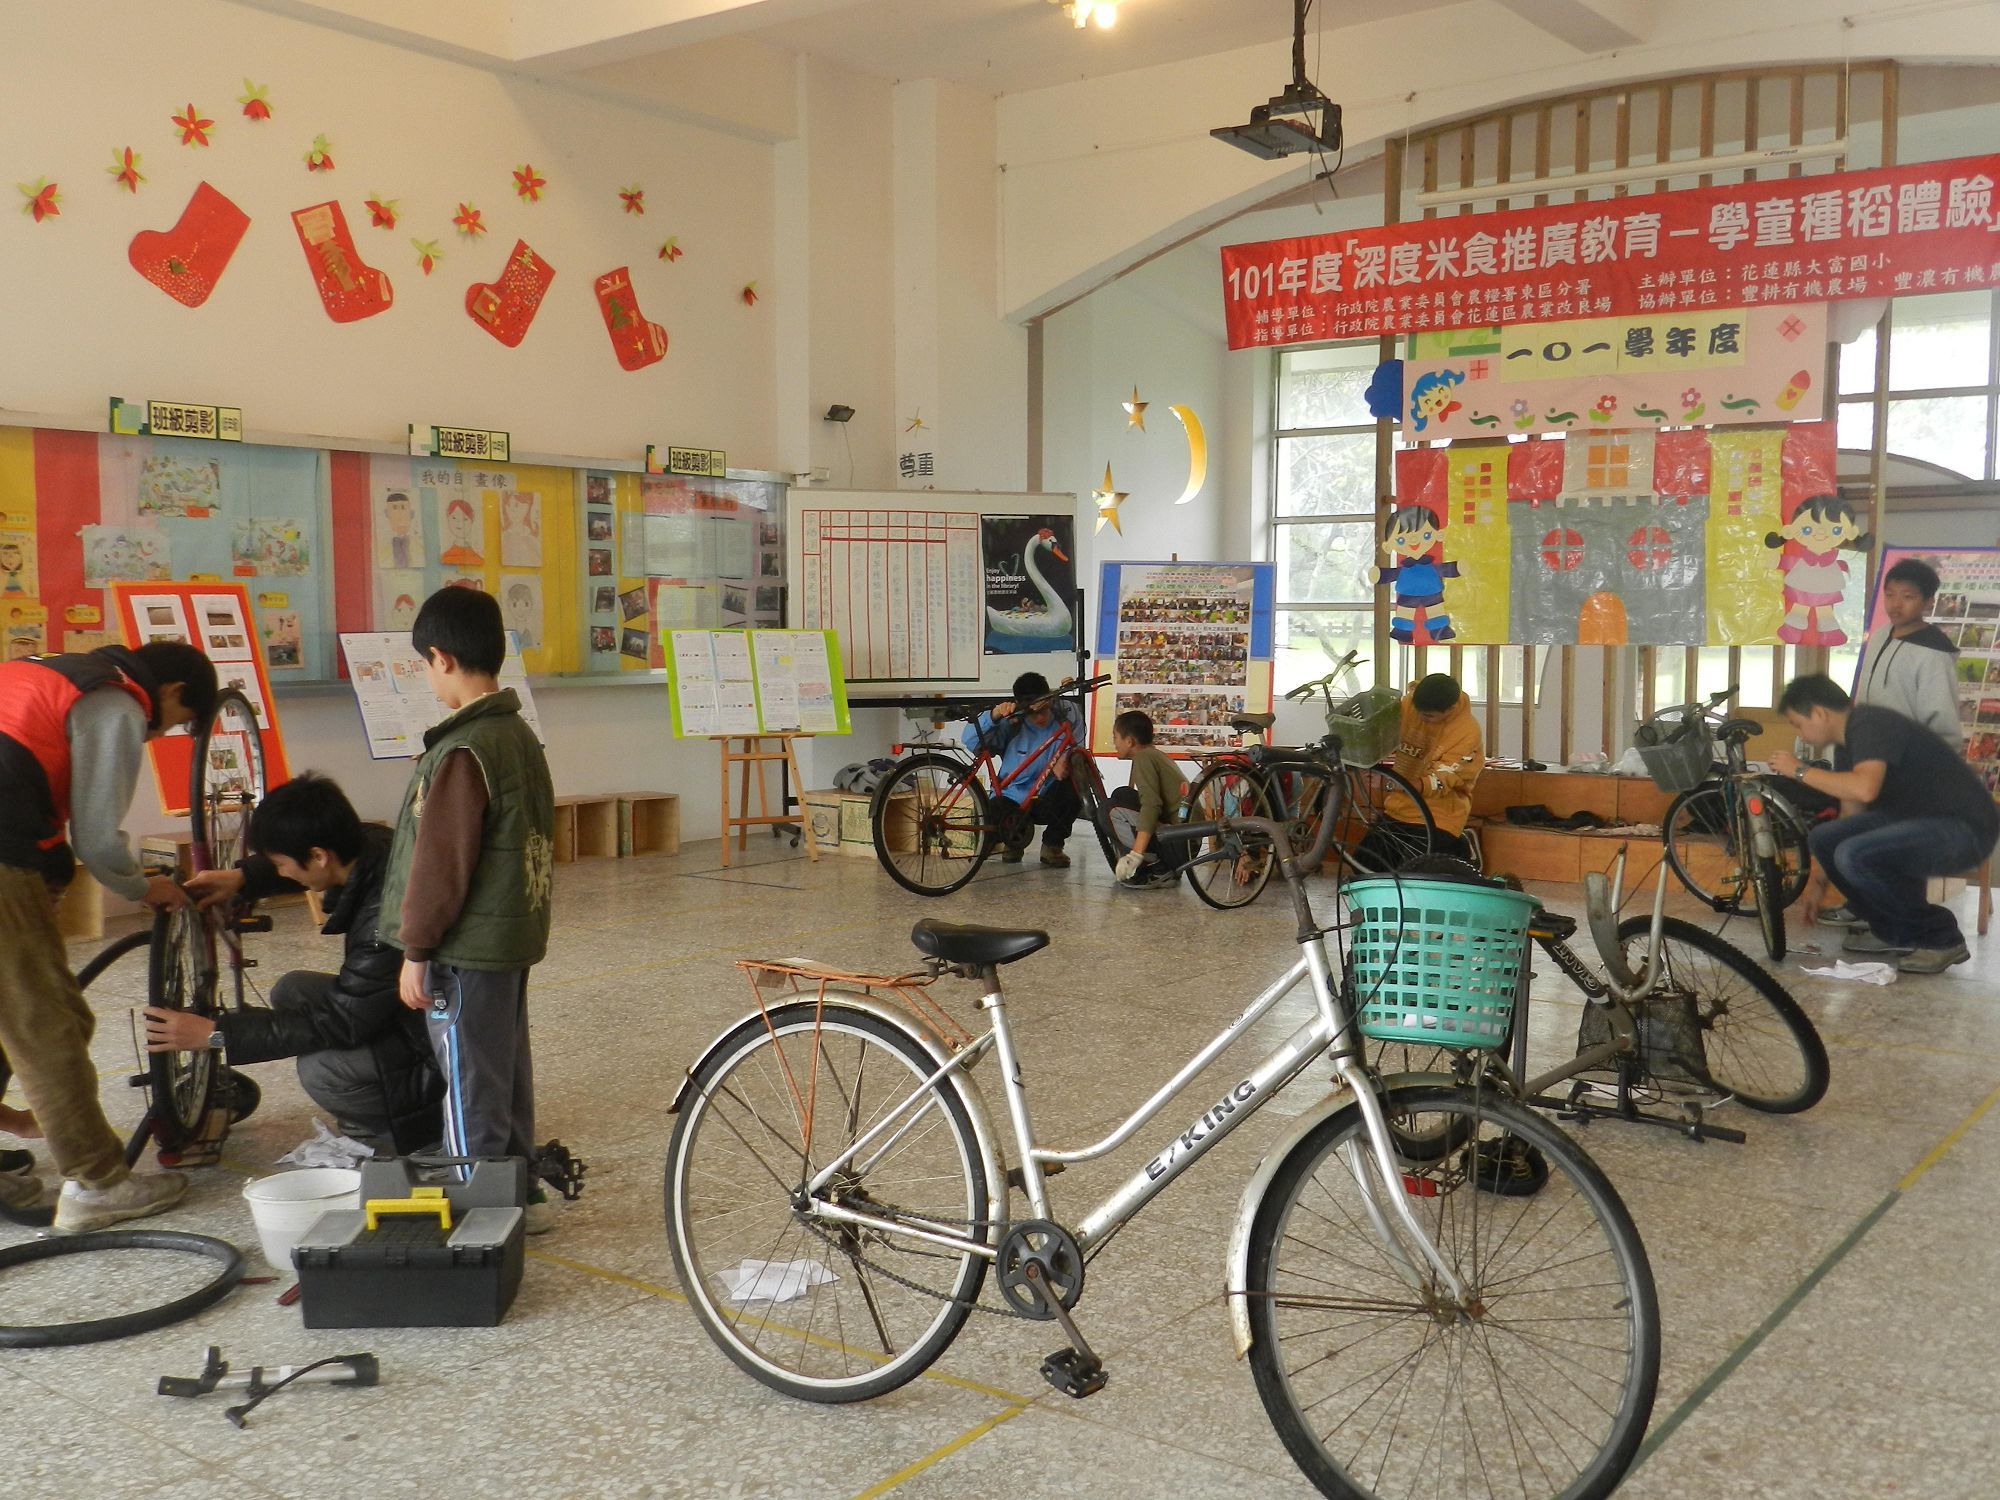 東華大學學生帶著社區小朋友動手修理與彩繪二手單車